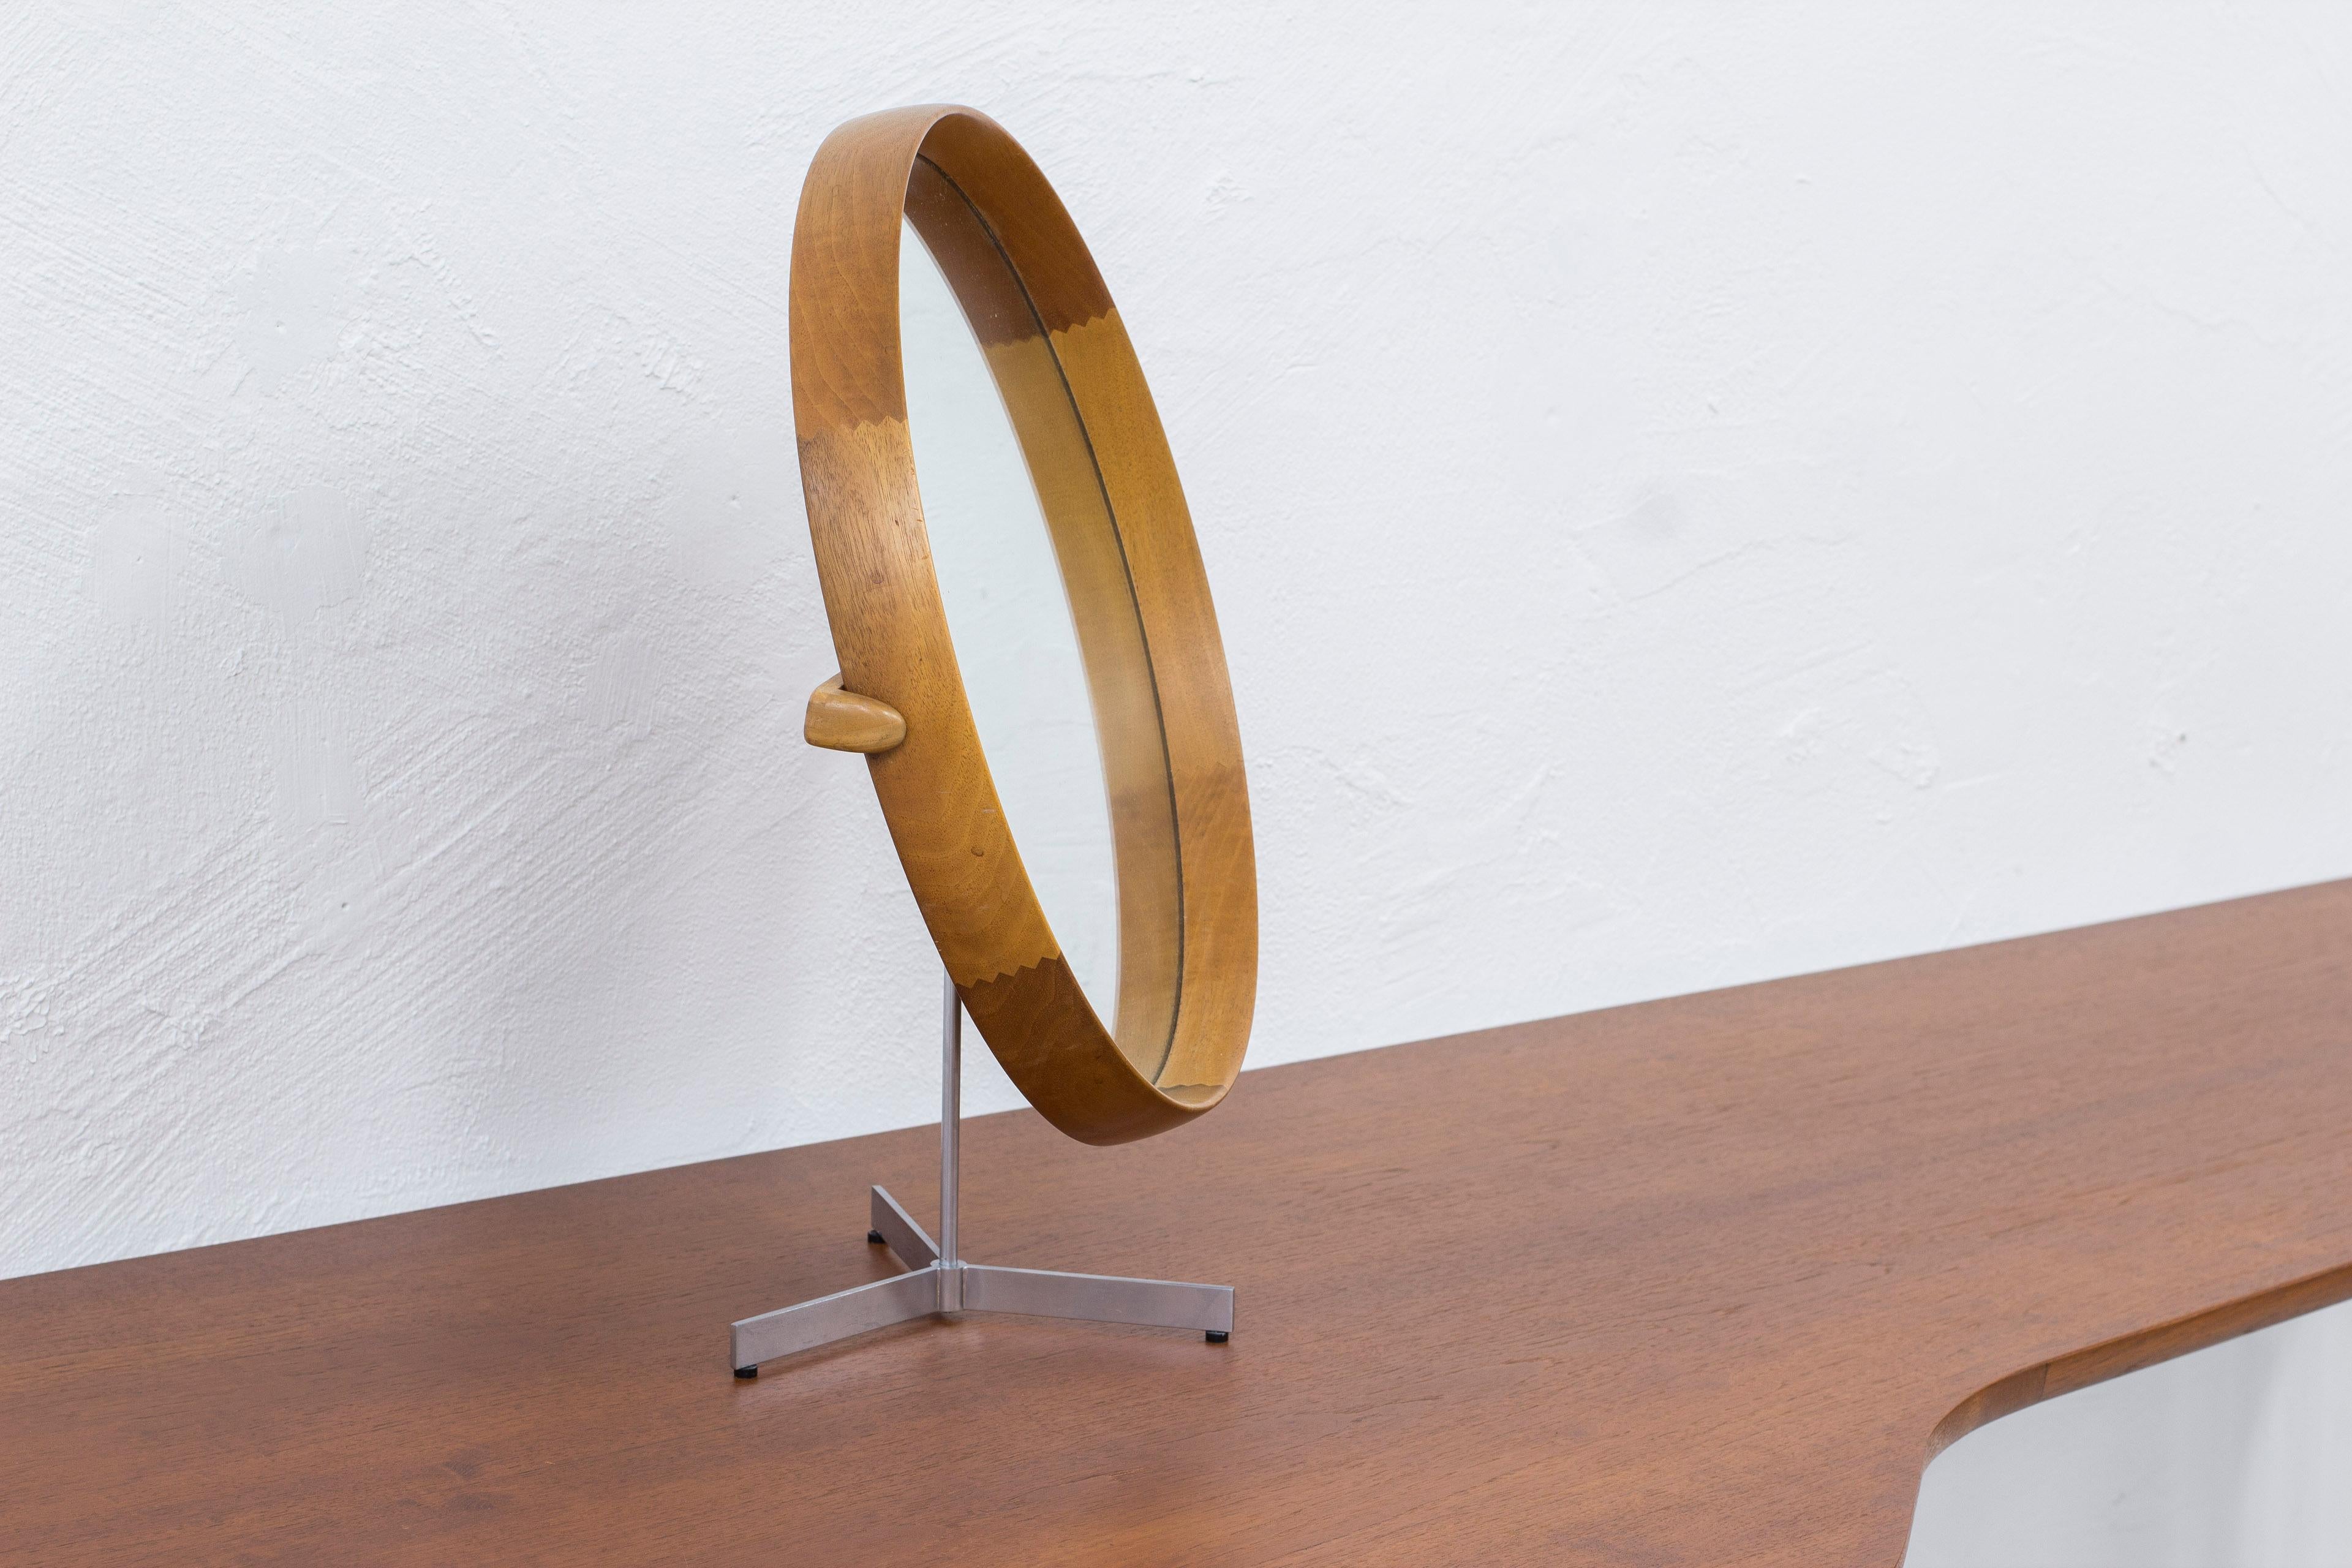 Grand miroir de table conçu par Uno & Östen Kristiansson. Produit par la société suédoise Luxus dans les années 1950. Cadre en hêtre massif. Menuiserie à glissière sur le cadre et la pièce arrière. Base en aluminium brossé. Réglable en angle et